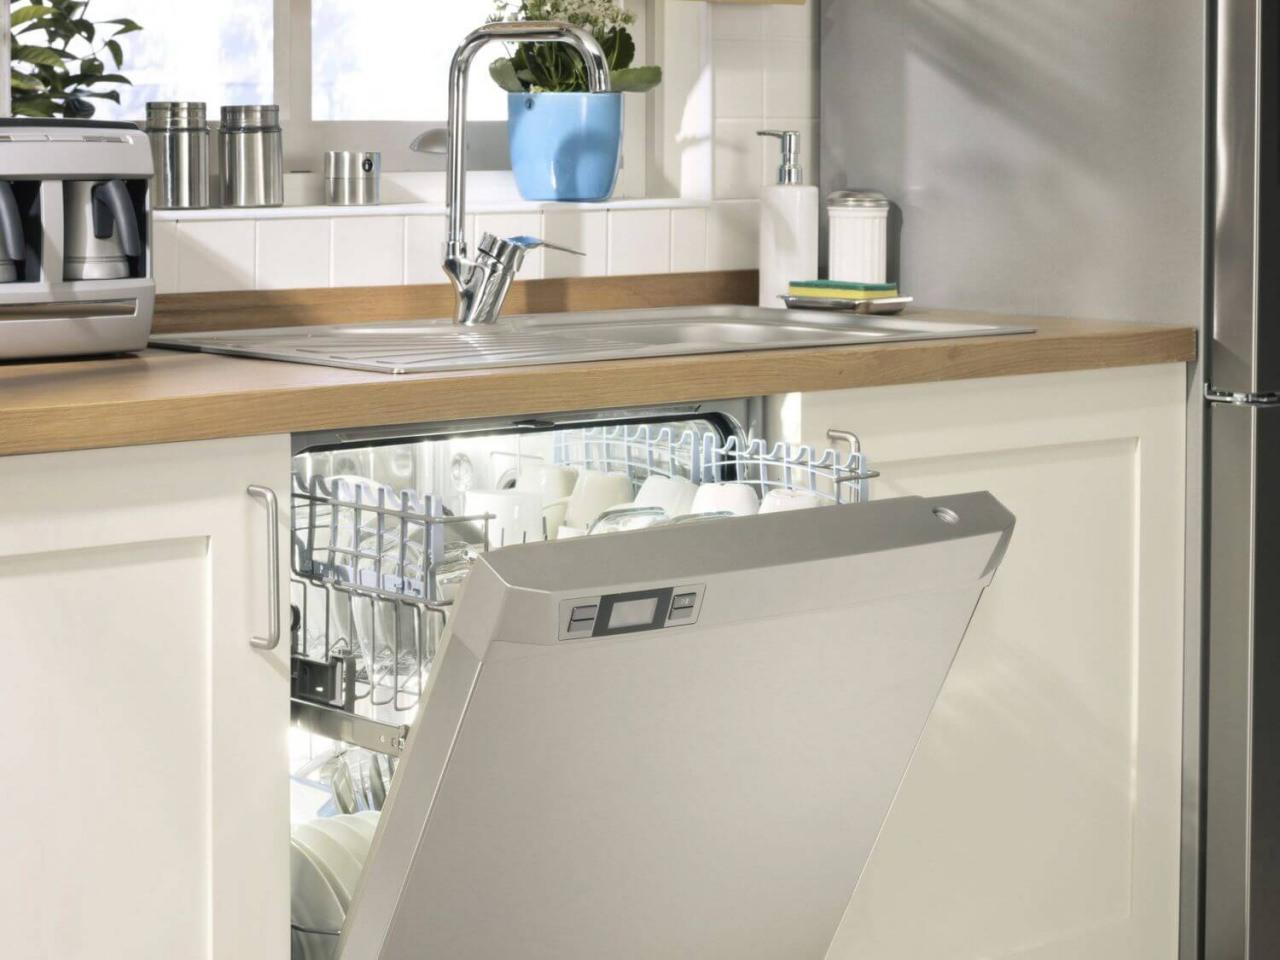 Pırıl pırıl temiz bulaşıklar için: Bulaşık makinesi temizliği nasıl yapılır?